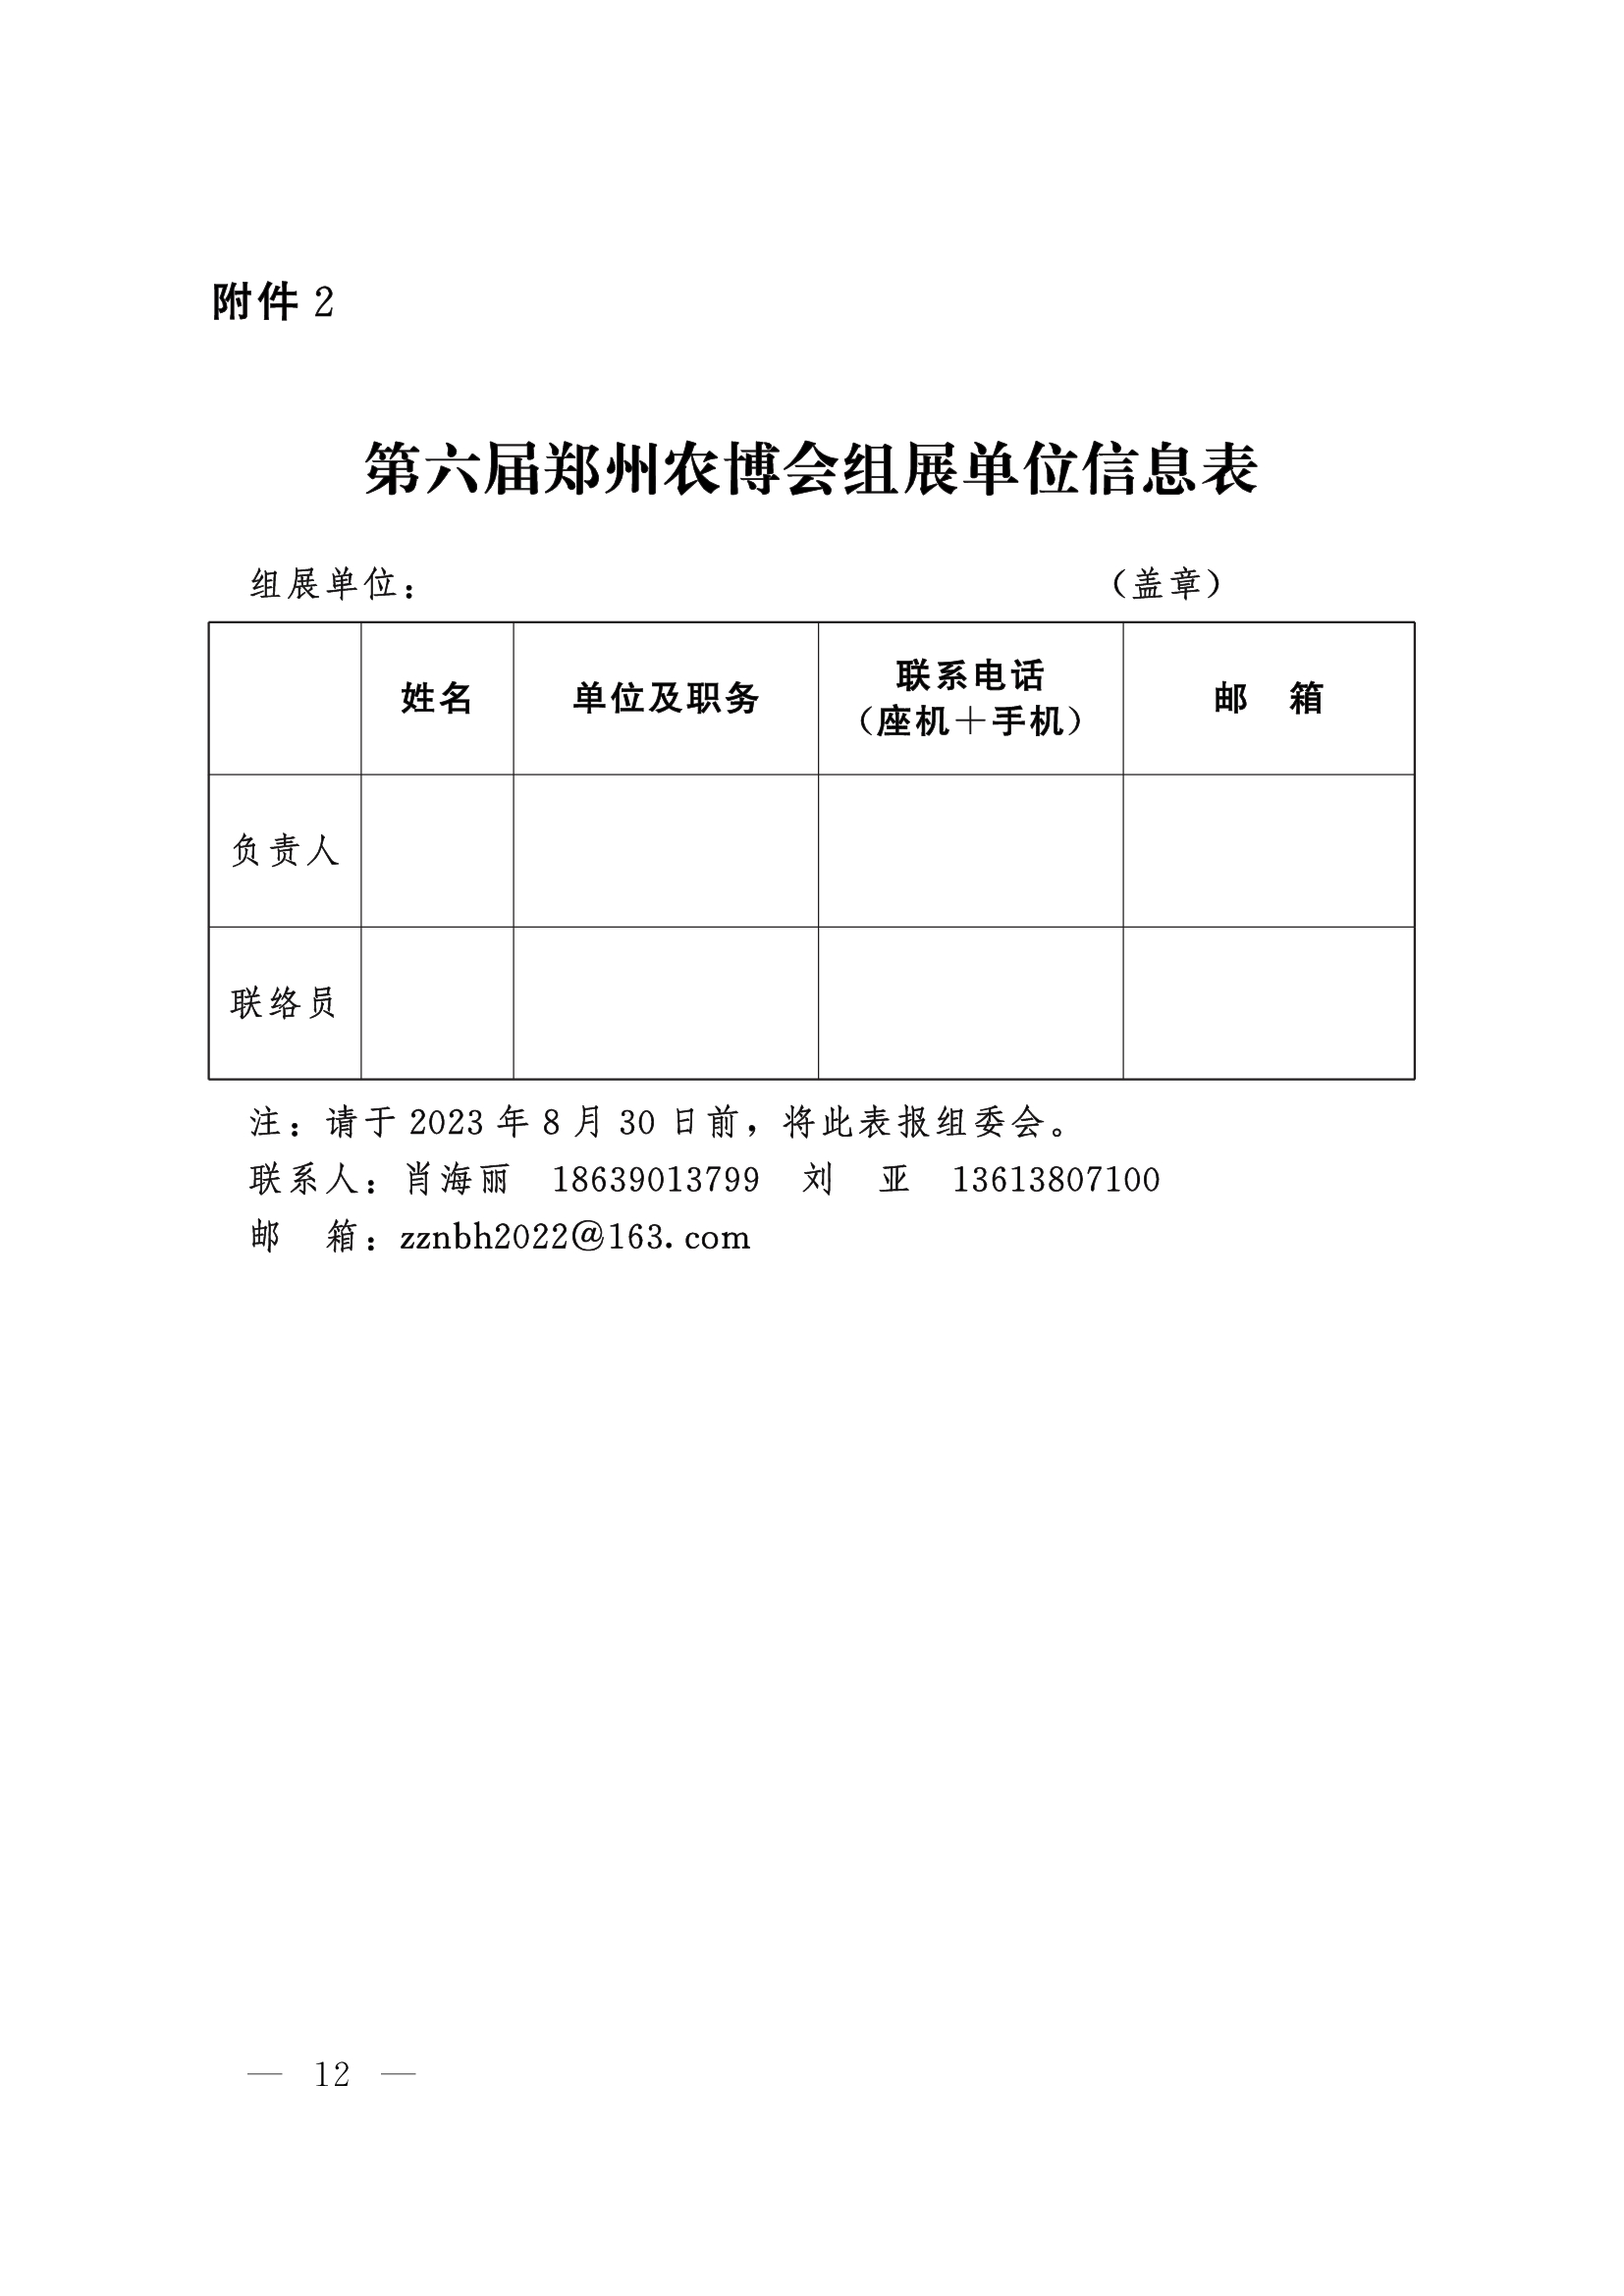 第六届郑州农博会组展单位信息表